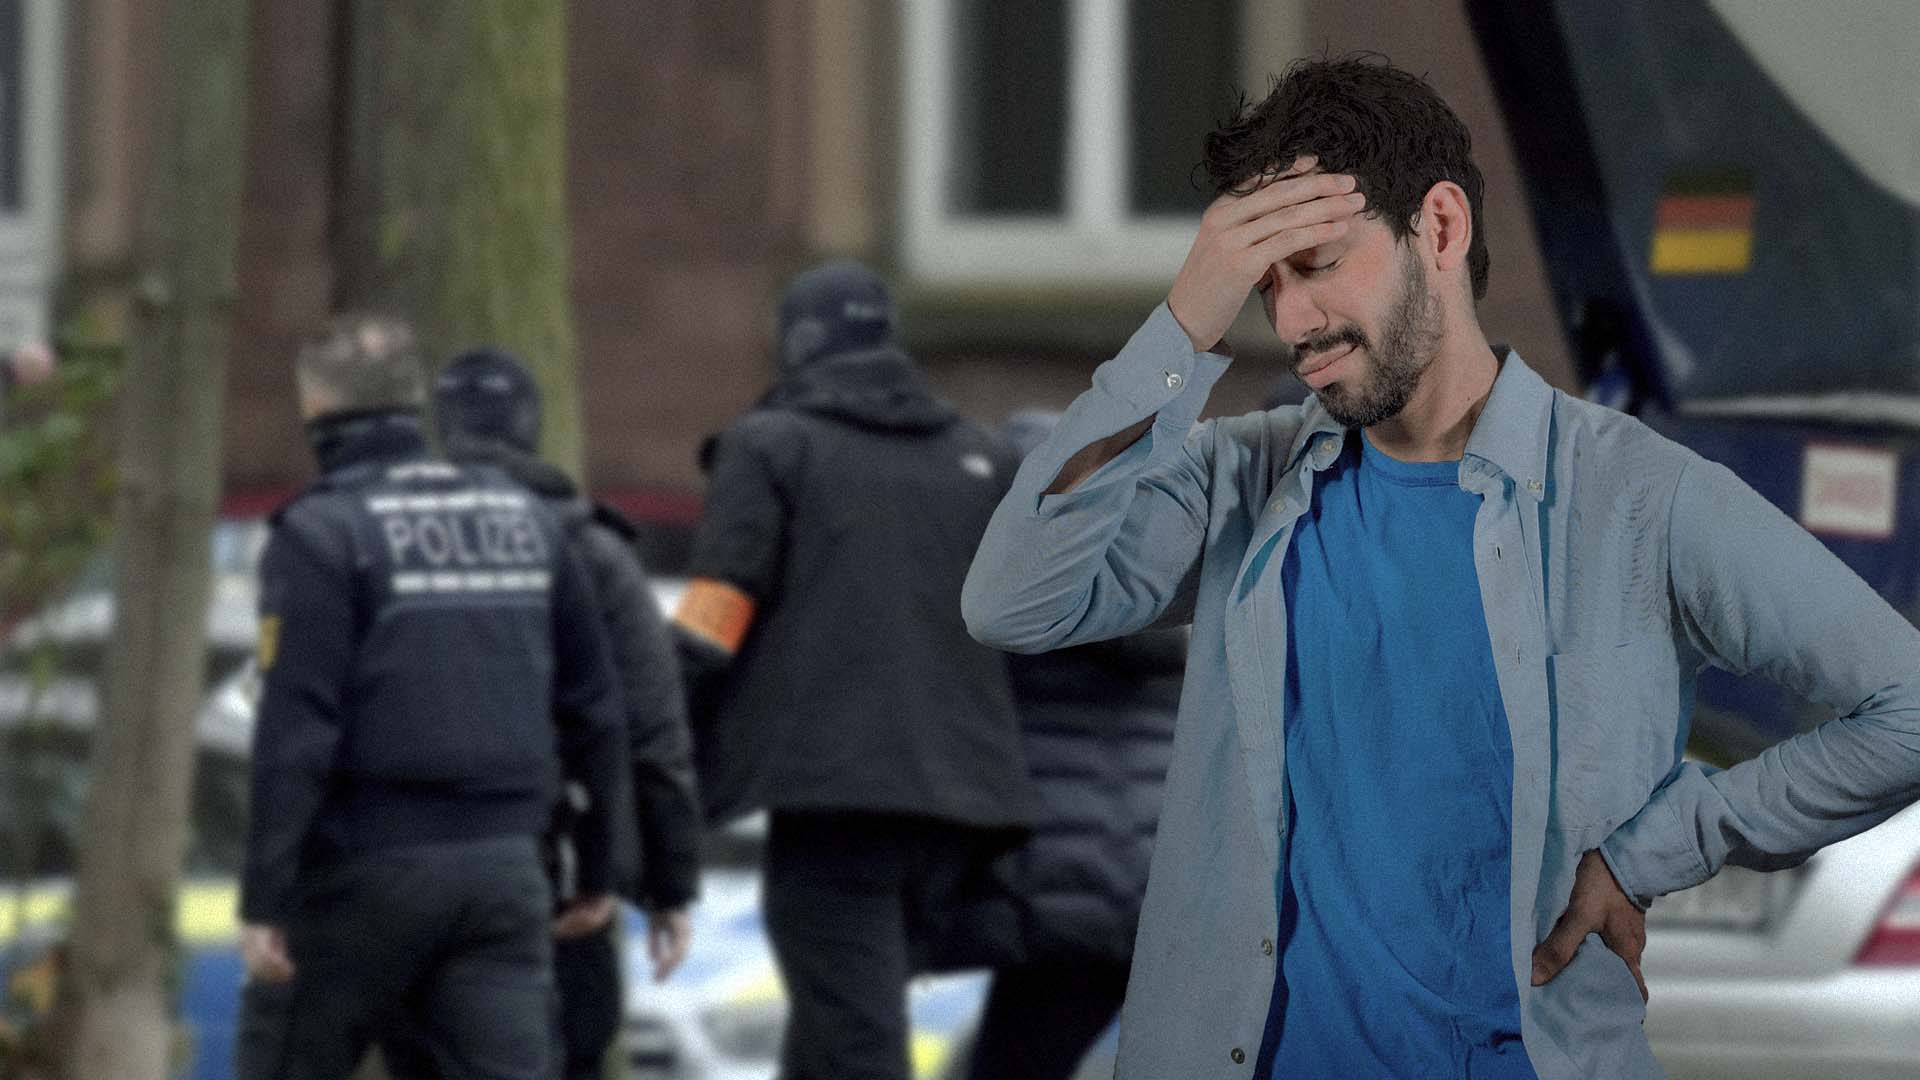 صورة مهاجر في ألمانيا يشعر وكأنه في وطنه فعلاً بعد أزمة الطاقة ومحاولة الانقلاب